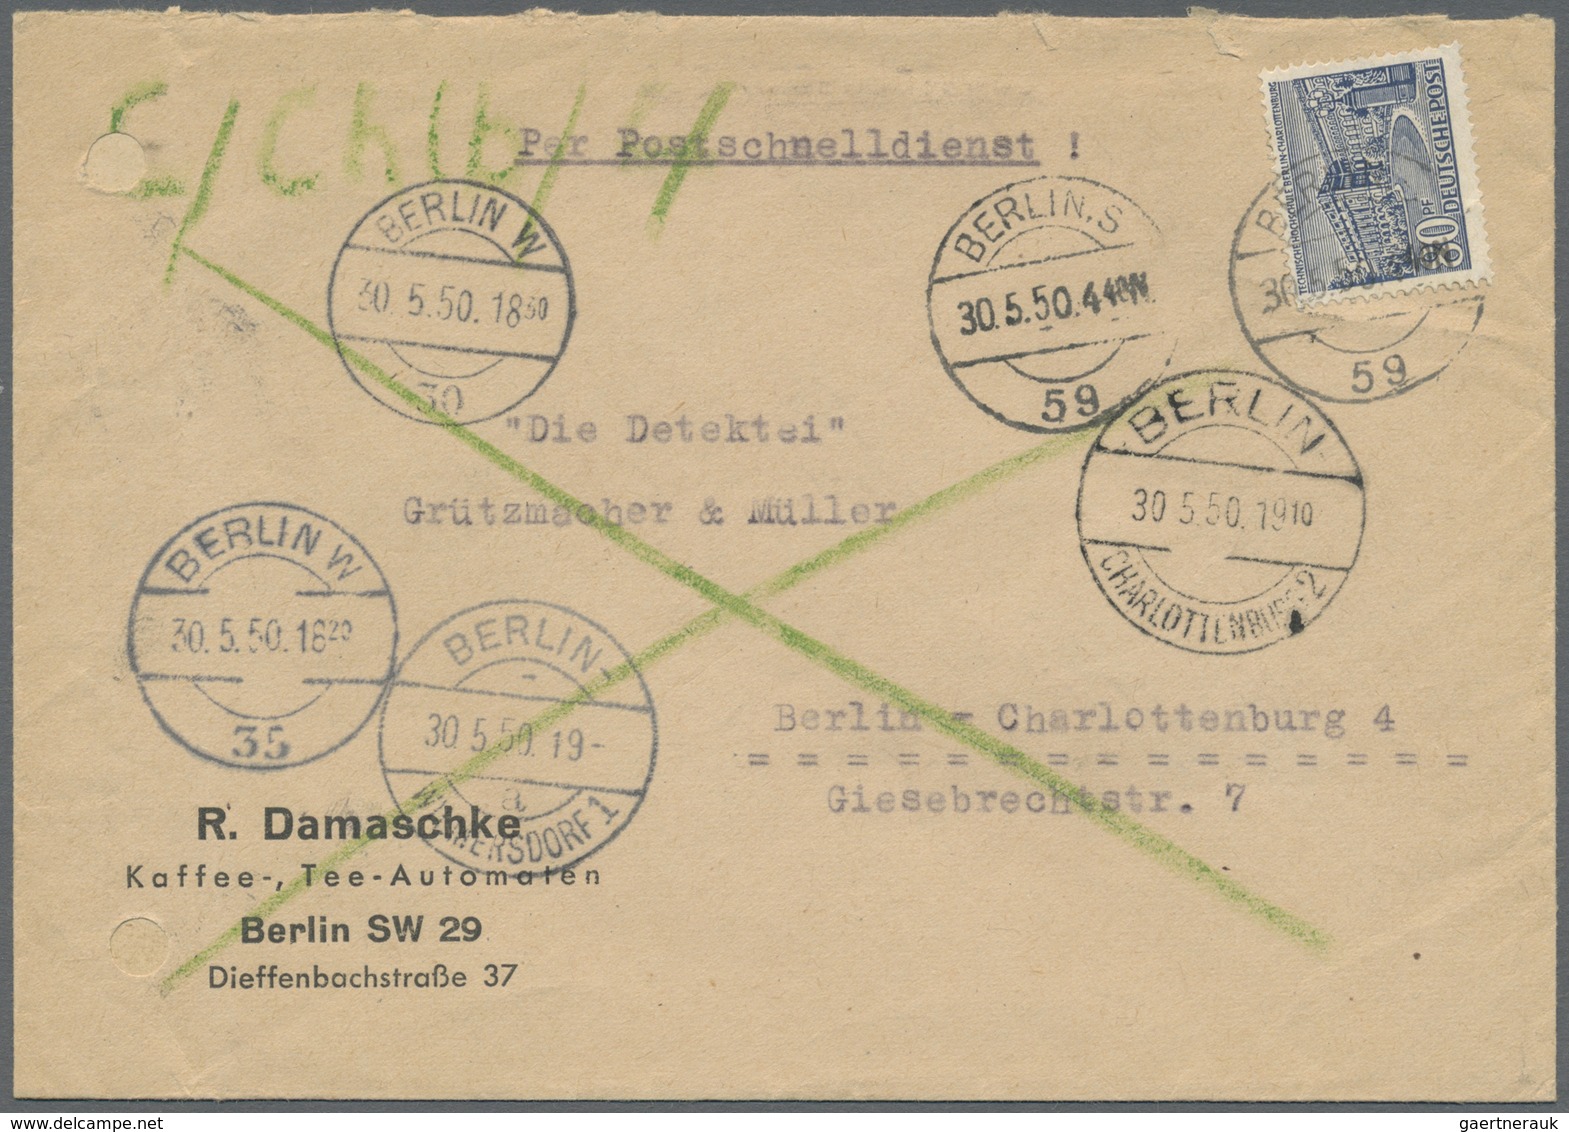 Br Berlin - Postschnelldienst: 1950:  Schnelldienstbrief 80 Pfennig Bauten Als EF Berlin-Steglitz 1 6.5 - Briefe U. Dokumente